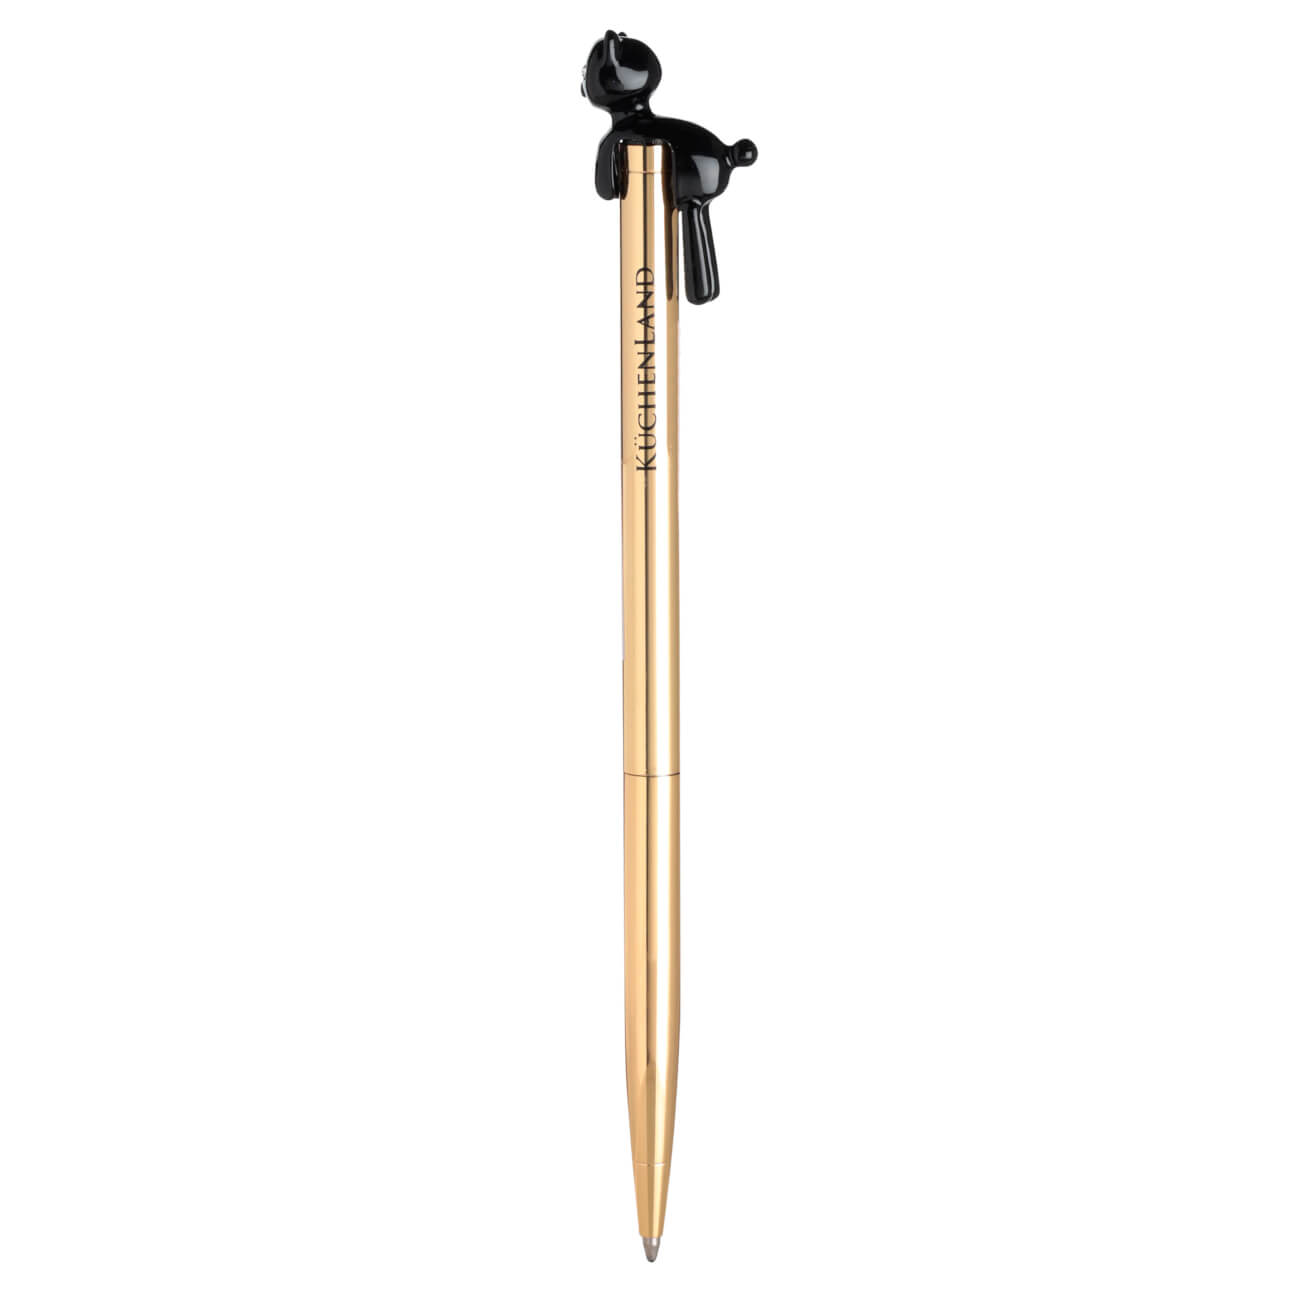 Ручка шариковая, 14 см, с фигуркой, металл, золотистая, Черный кот, Draw figure brass ballpoint ручка